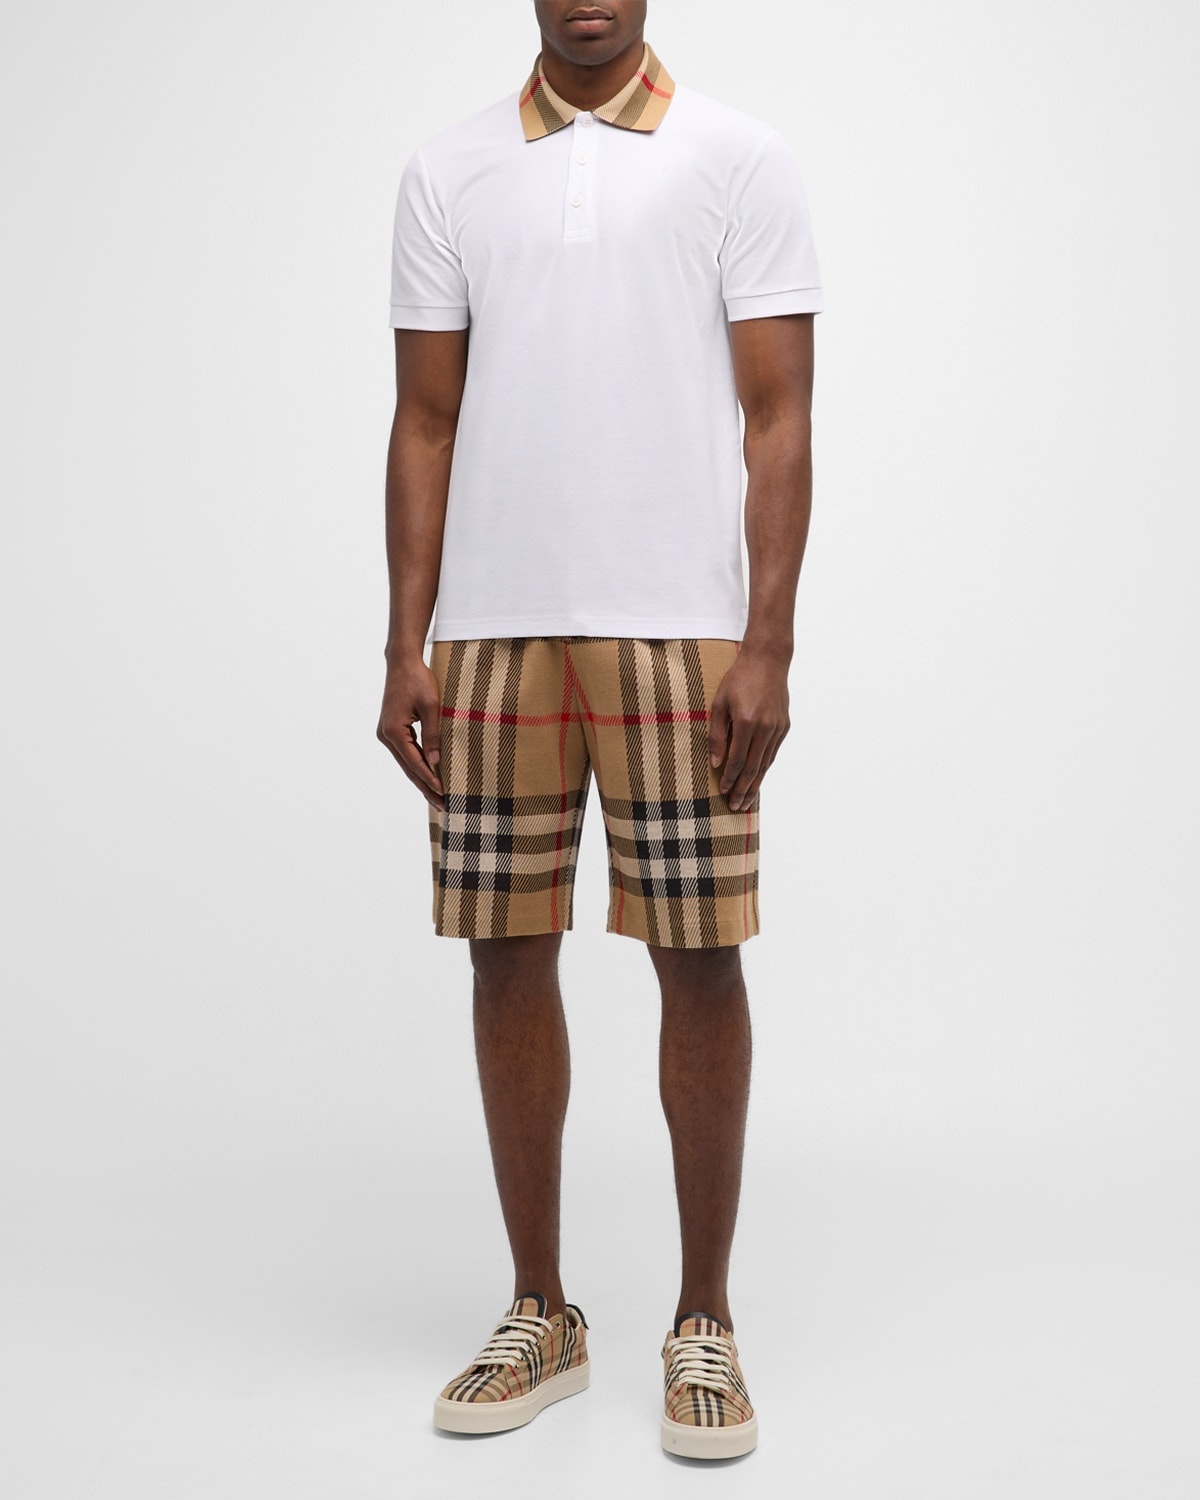 Men's Pique Polo Shirt with Check Collar - 3